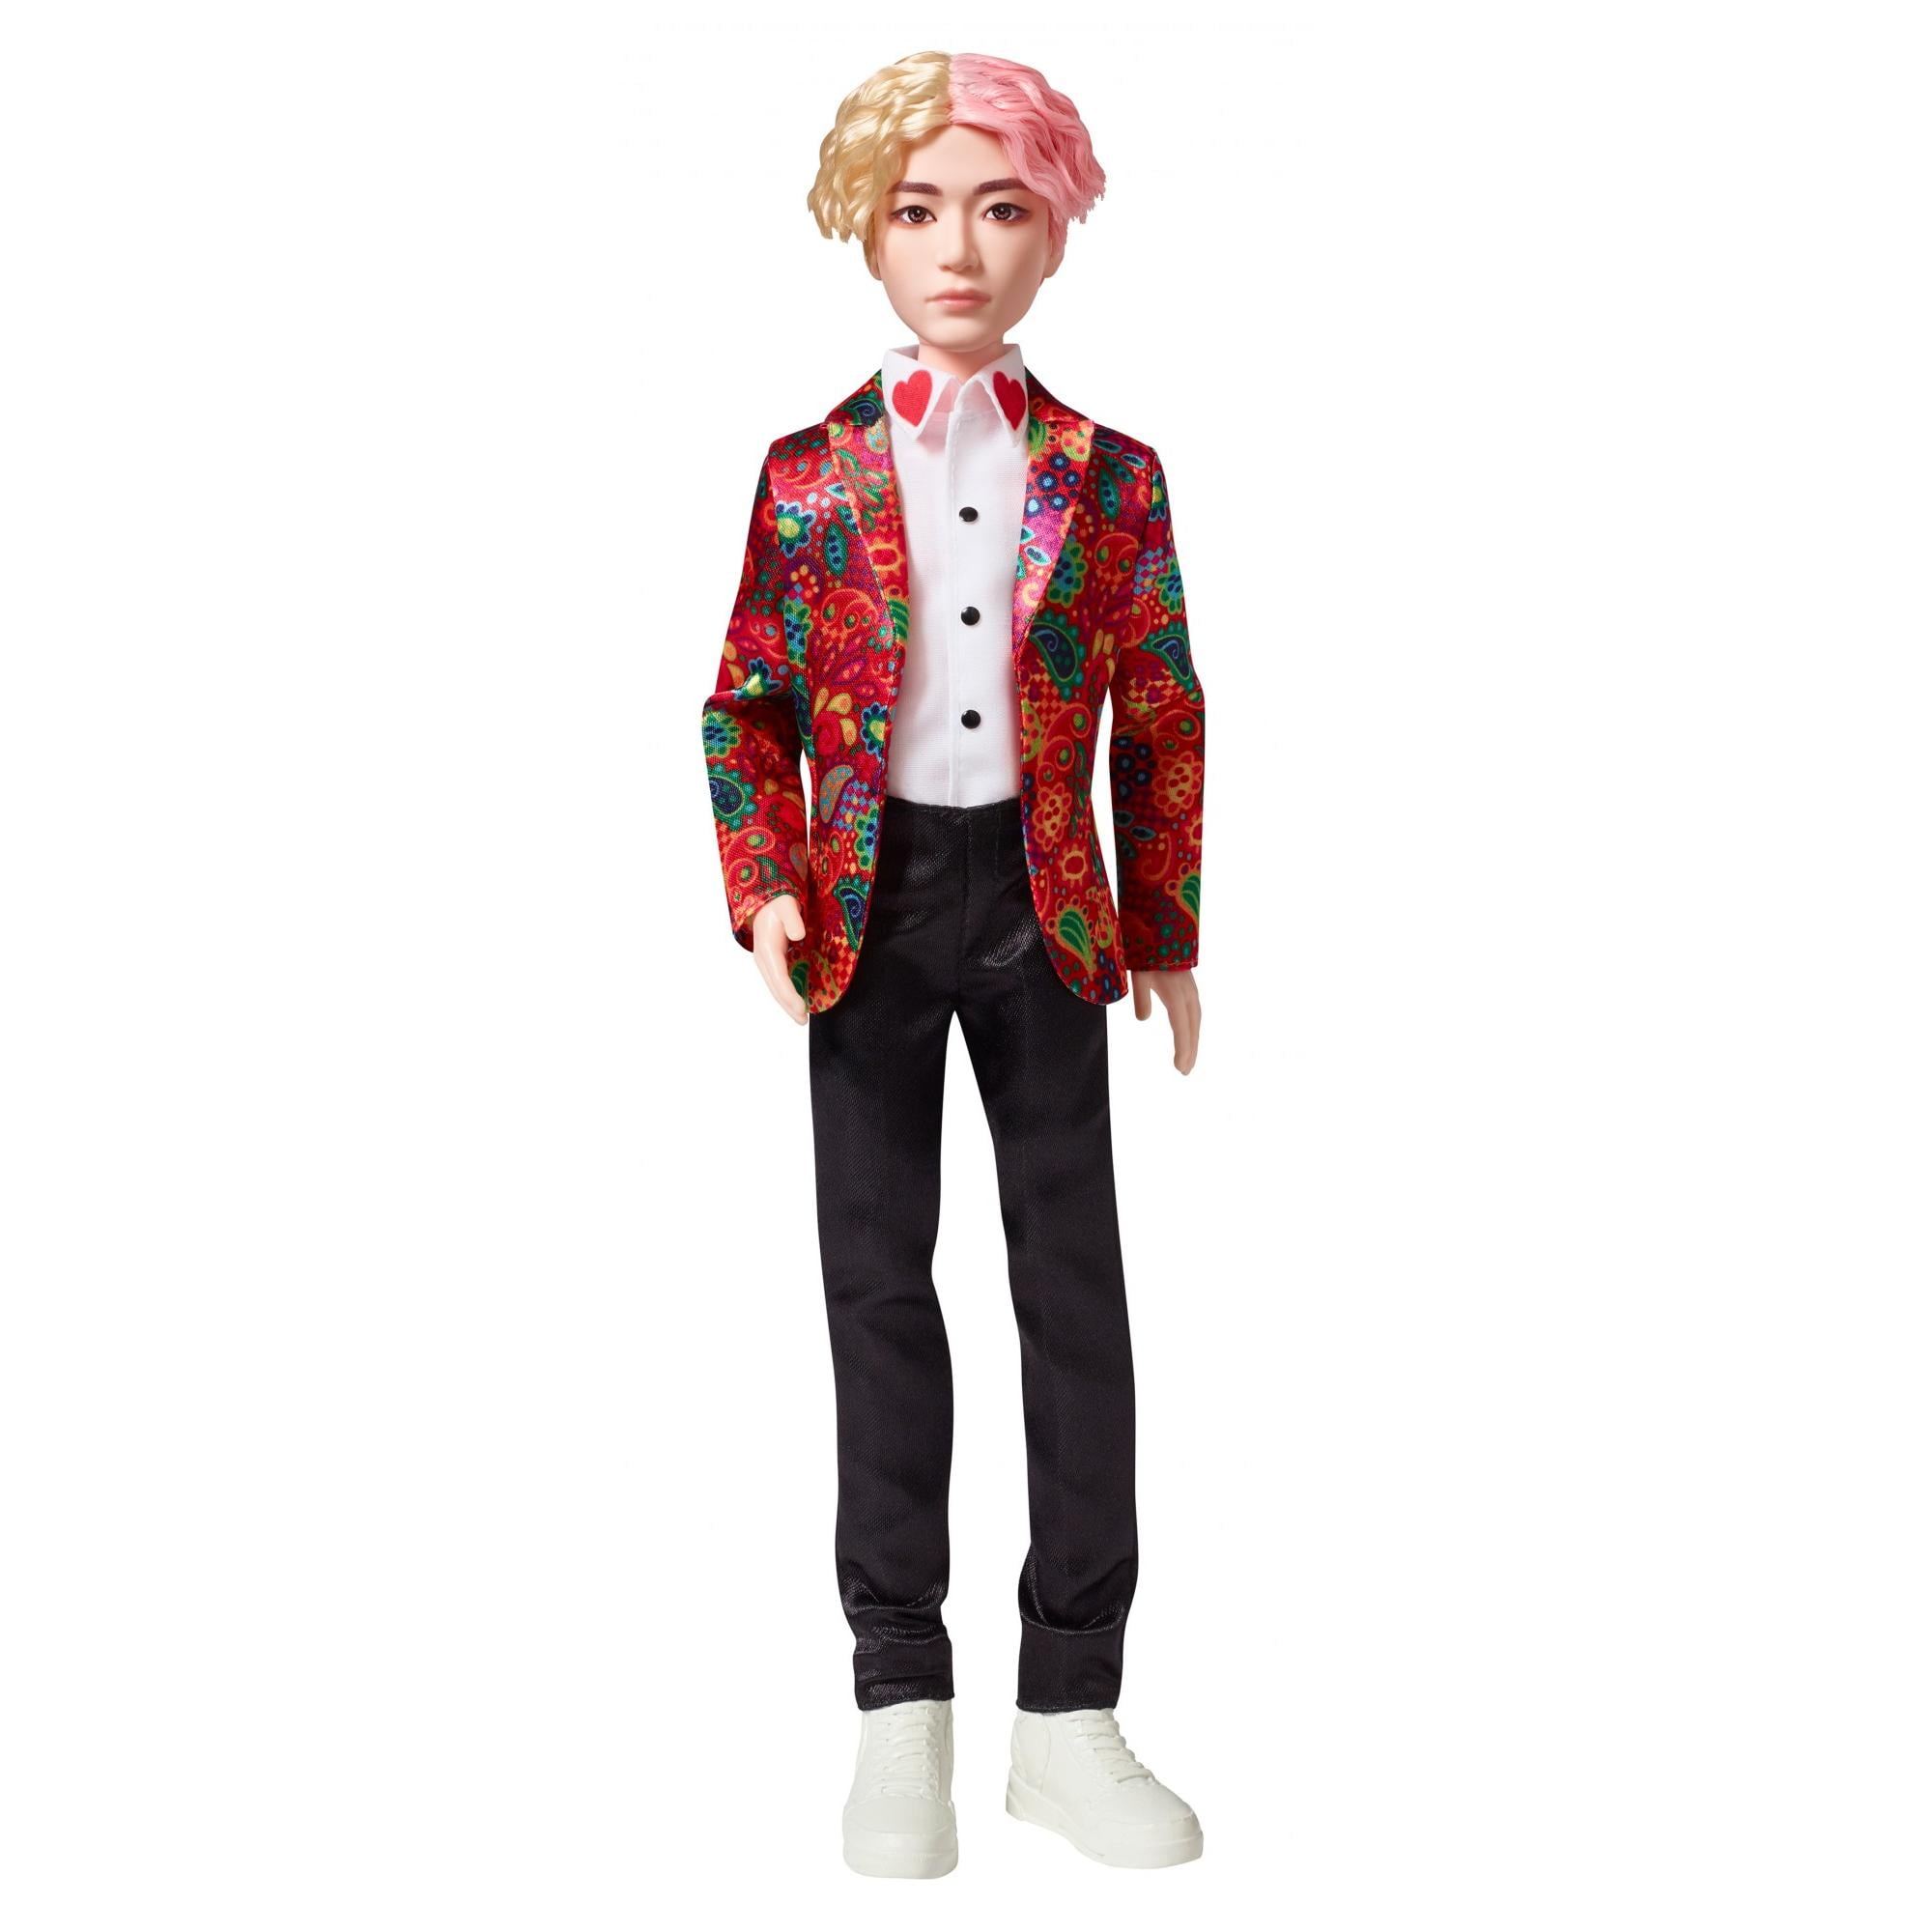 Mattel BTS Idol Doll J-hope Asst Gkc86 Gkc93 for sale online 